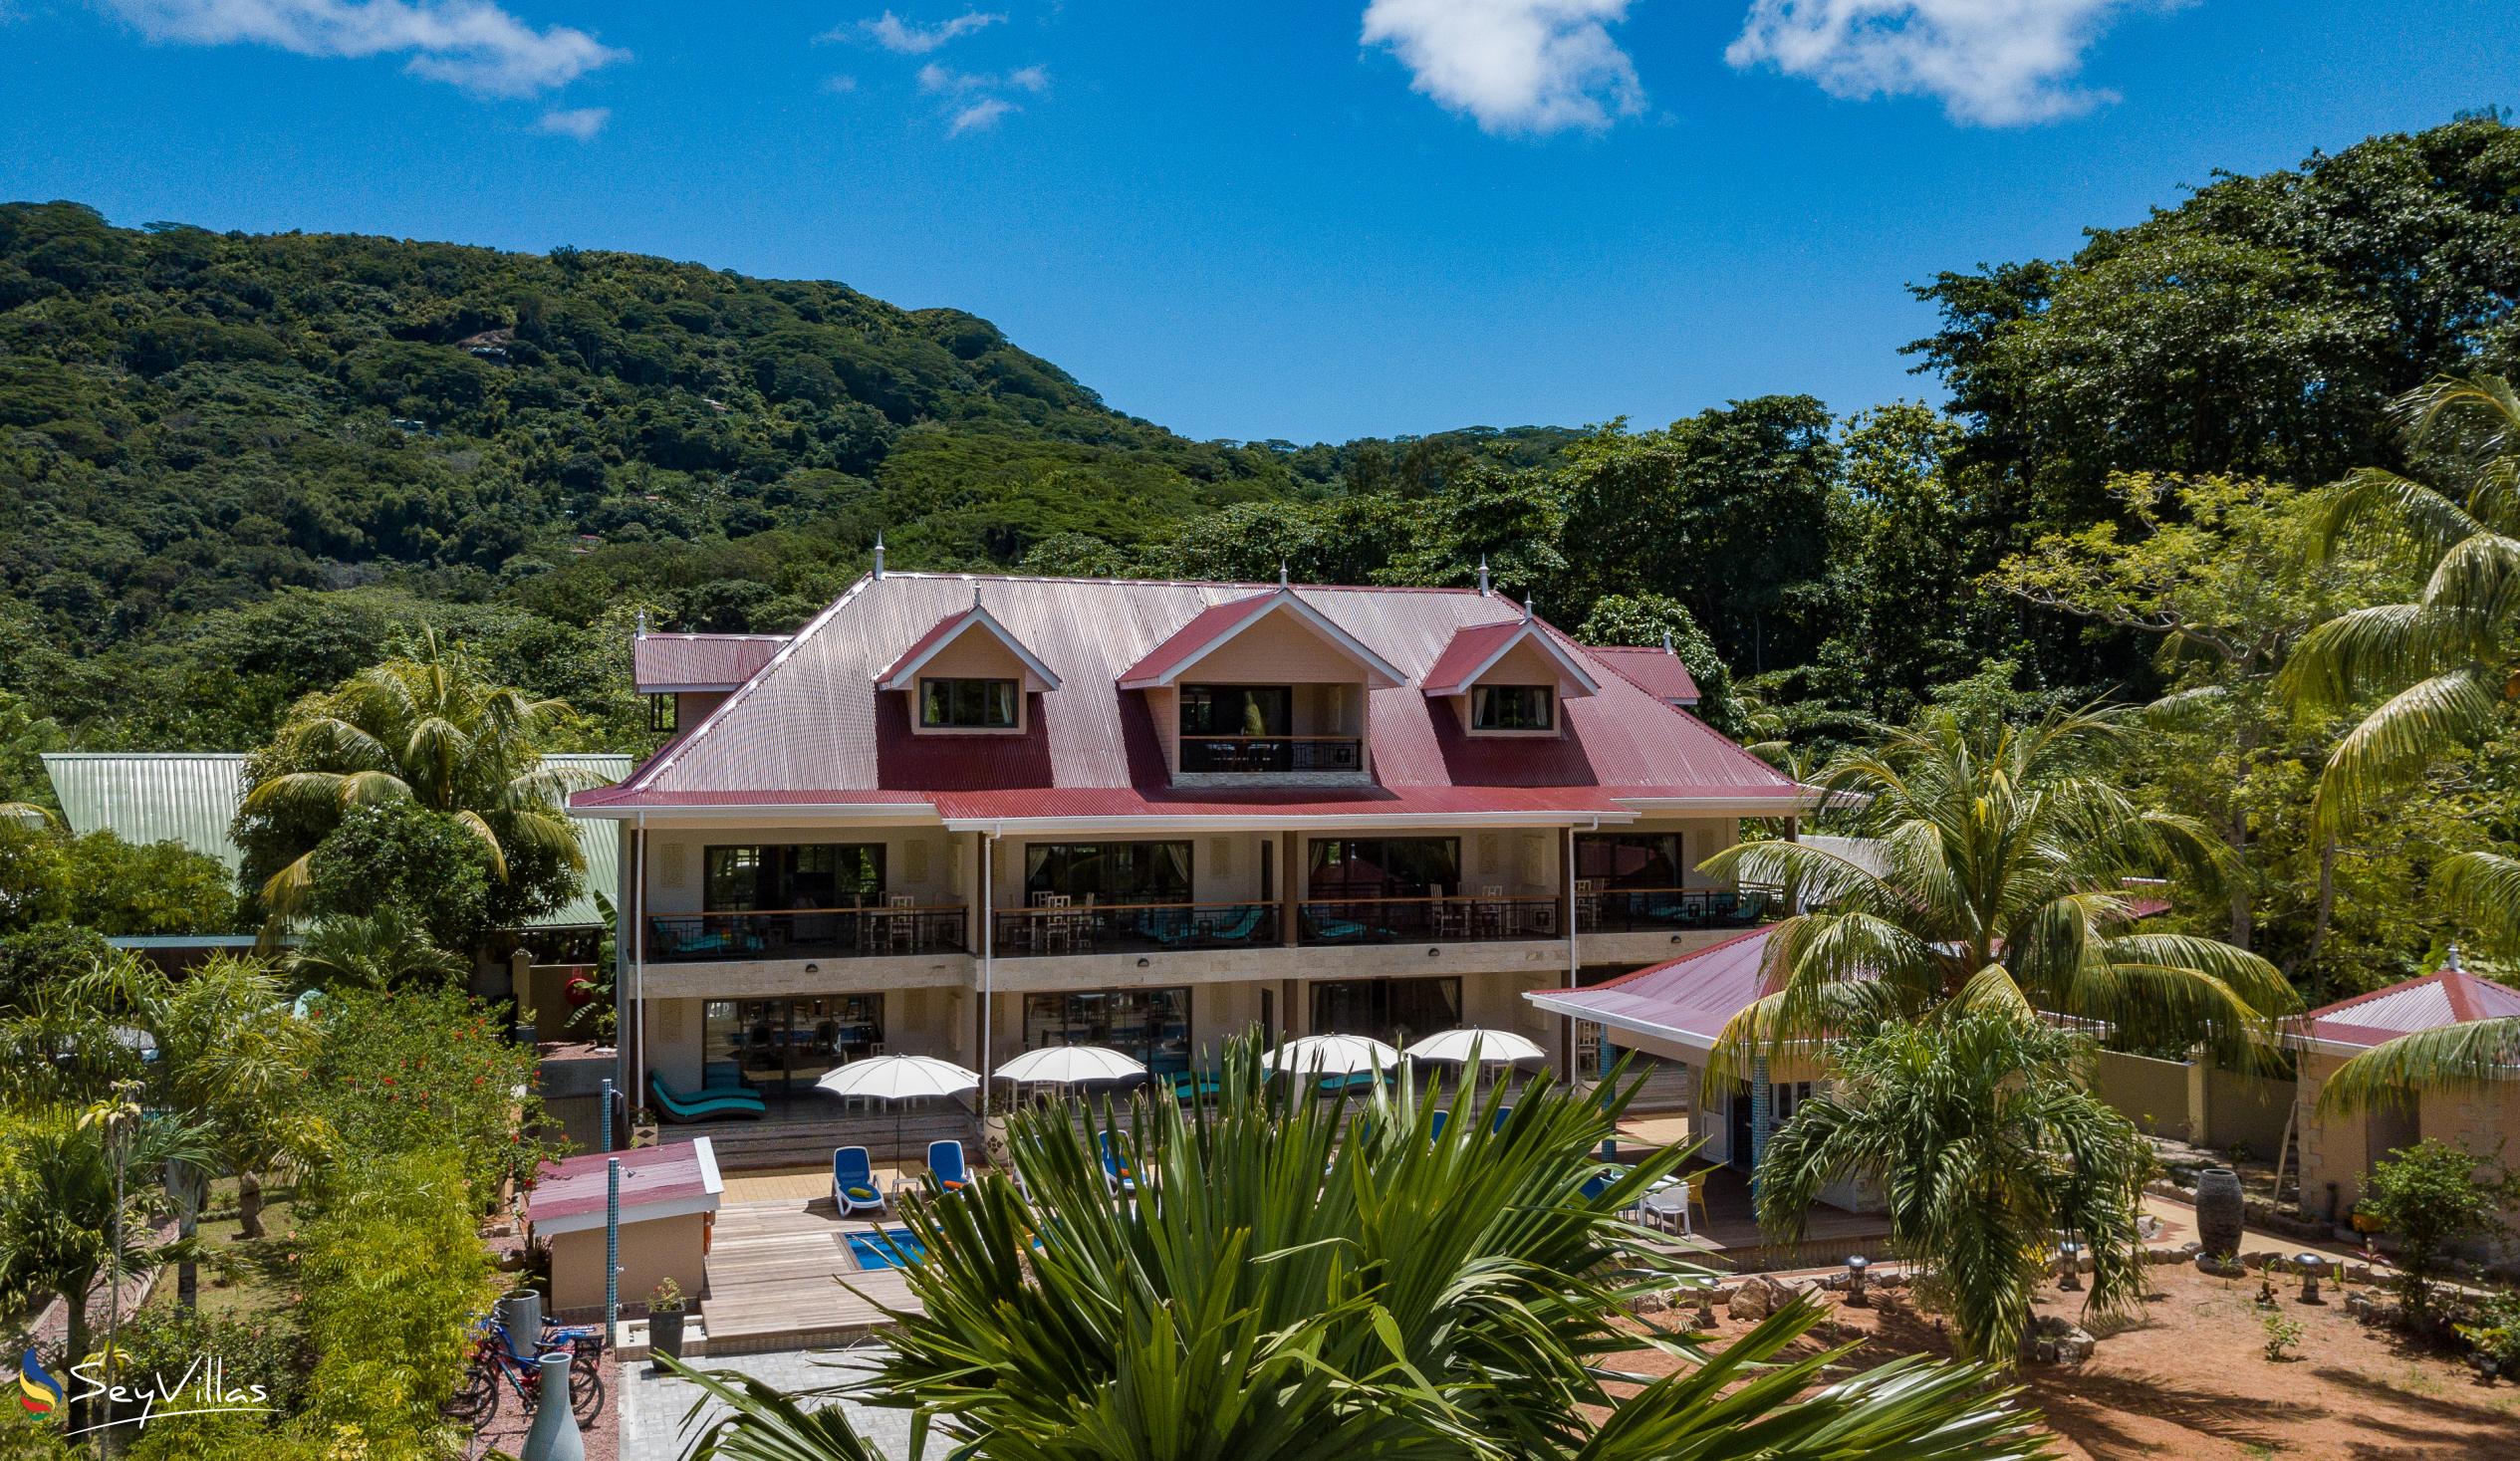 Photo 3: Casa de Leela - Outdoor area - La Digue (Seychelles)